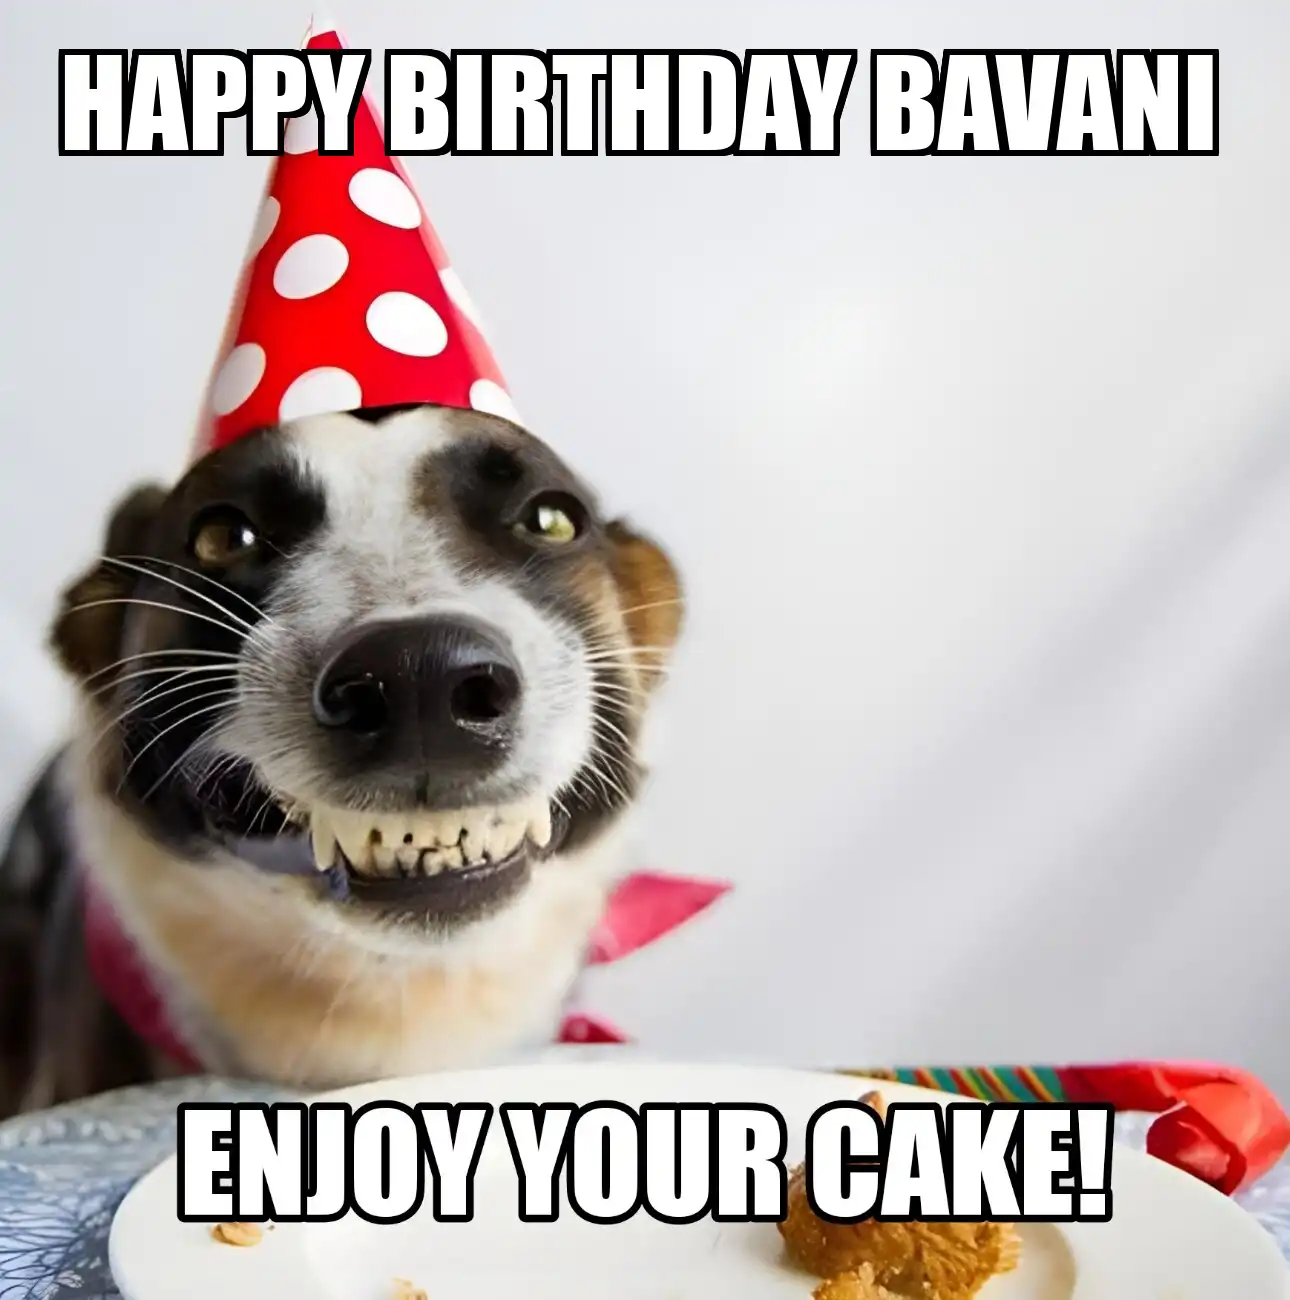 Happy Birthday Bavani Enjoy Your Cake Dog Meme